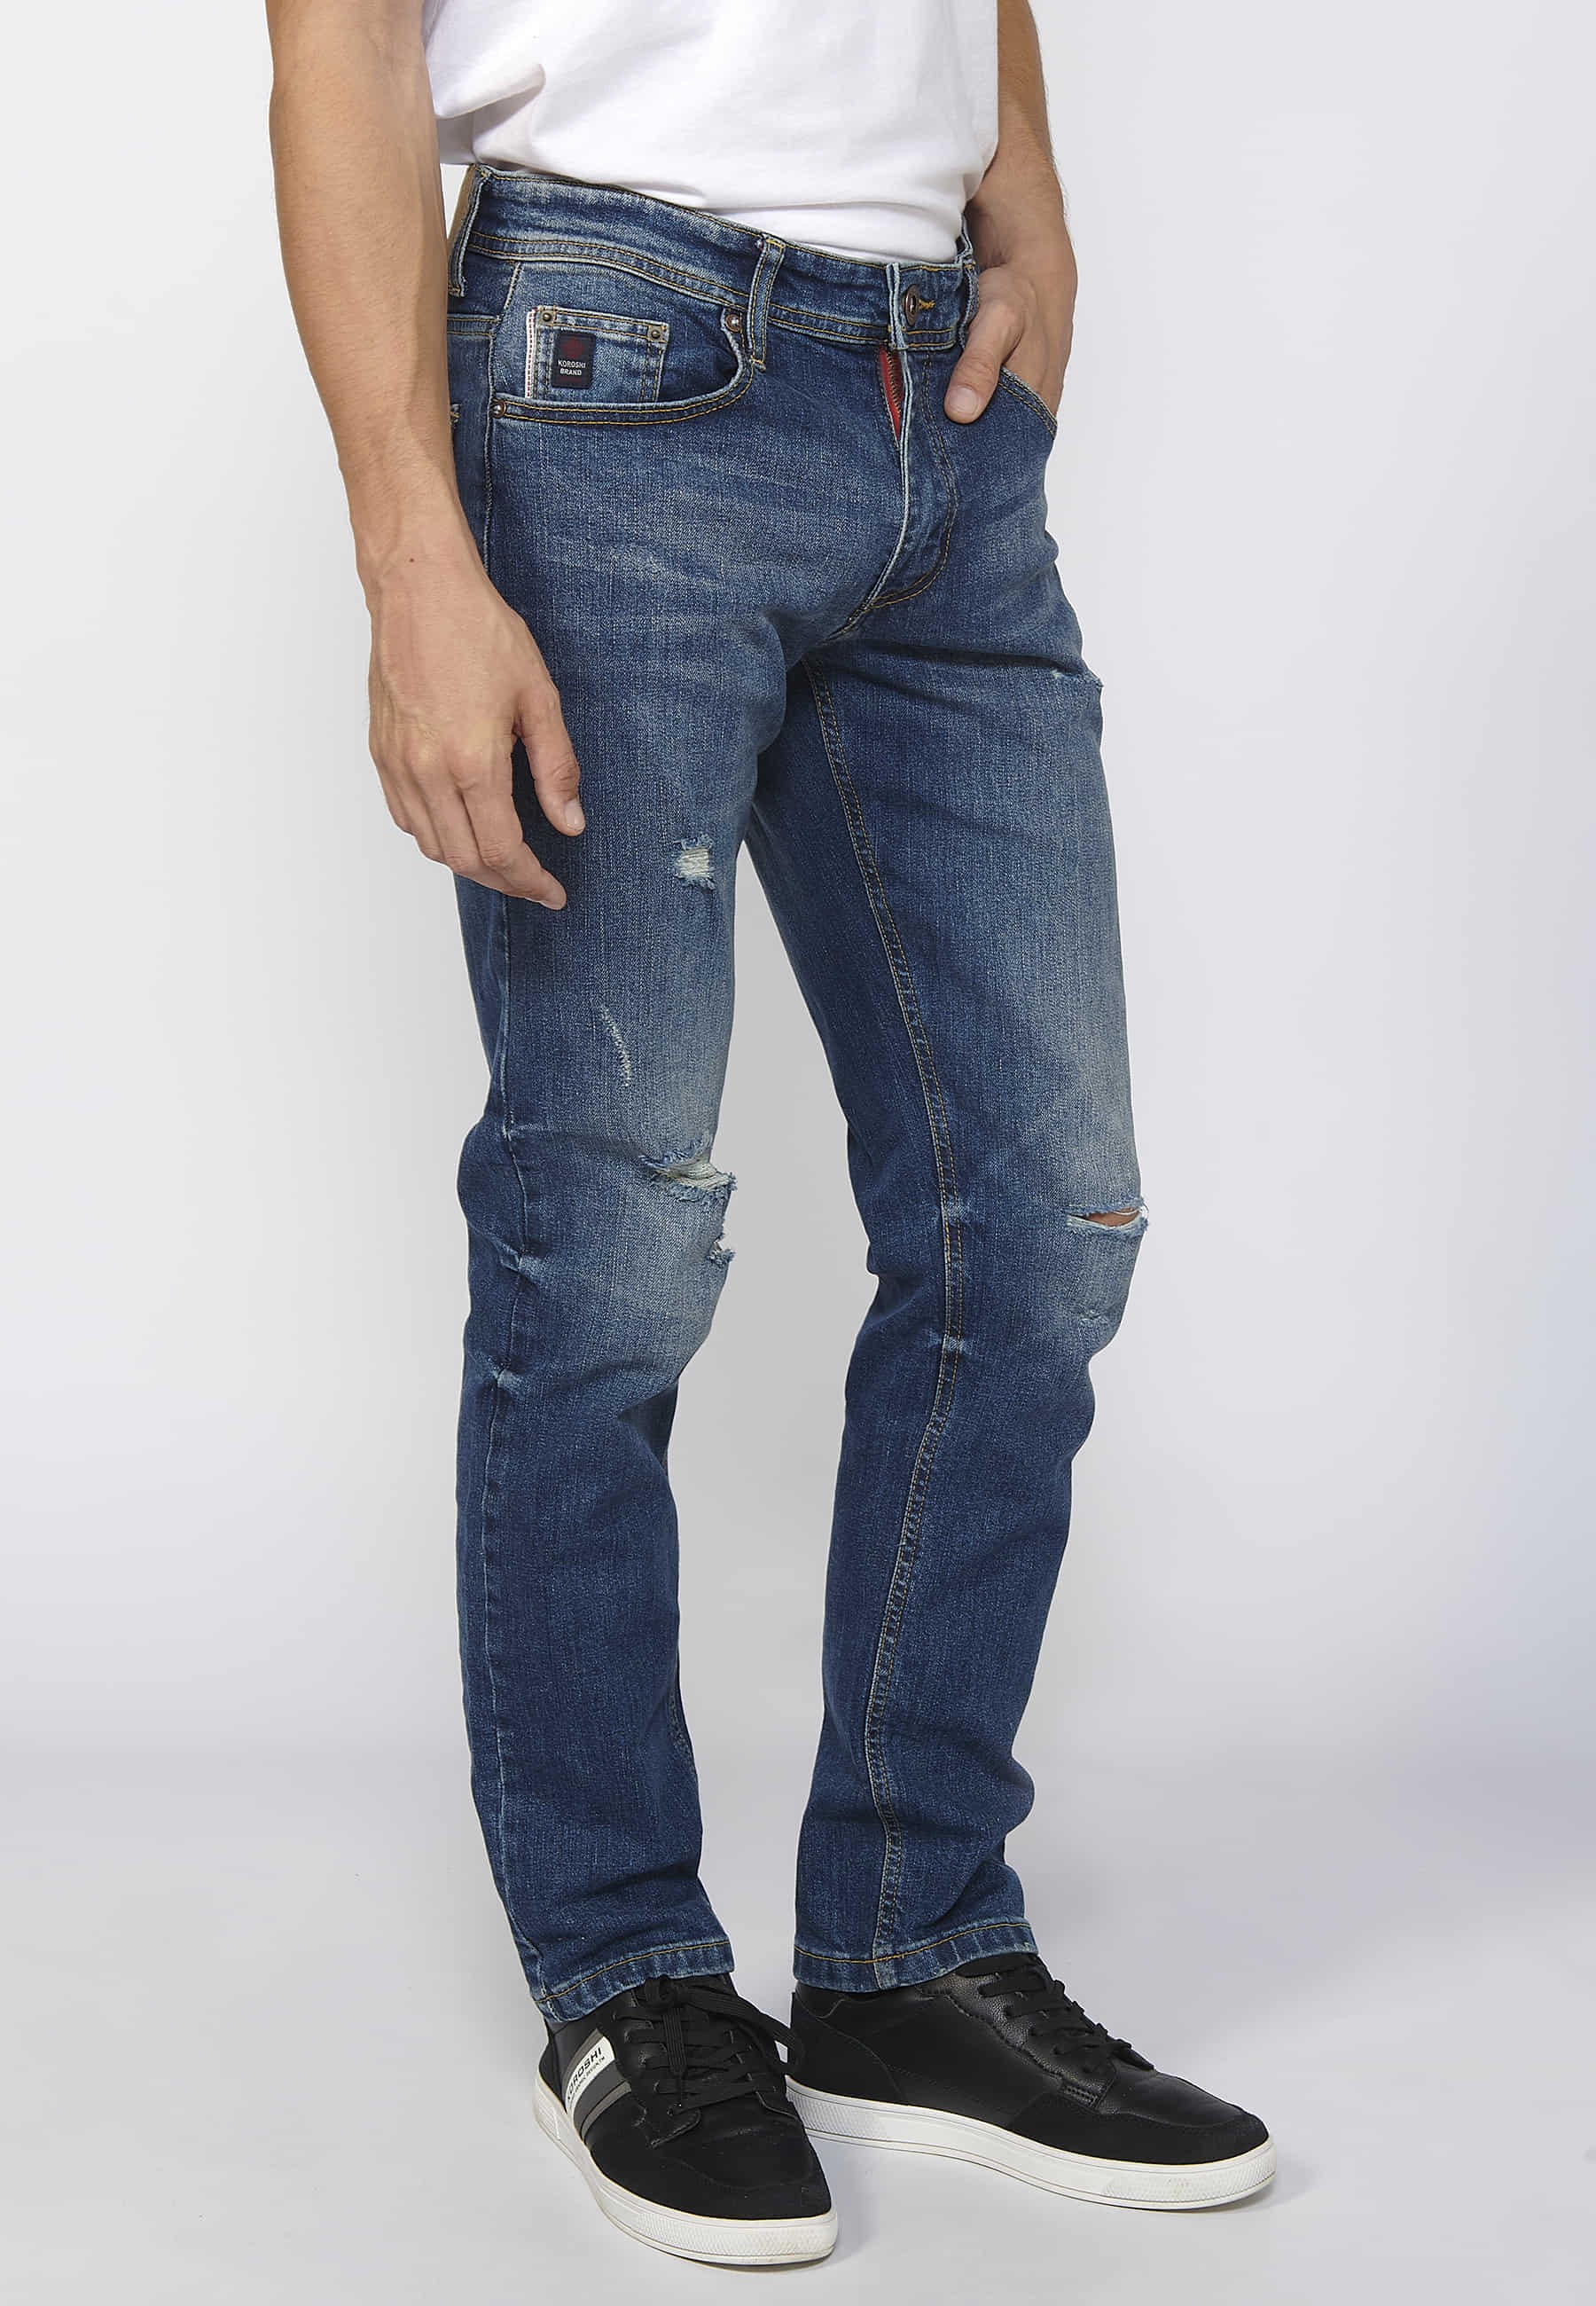 Pantalons llargs denim straigtht regular fit amb tancament davanter amb cremallera i botó color blau per a Home 4